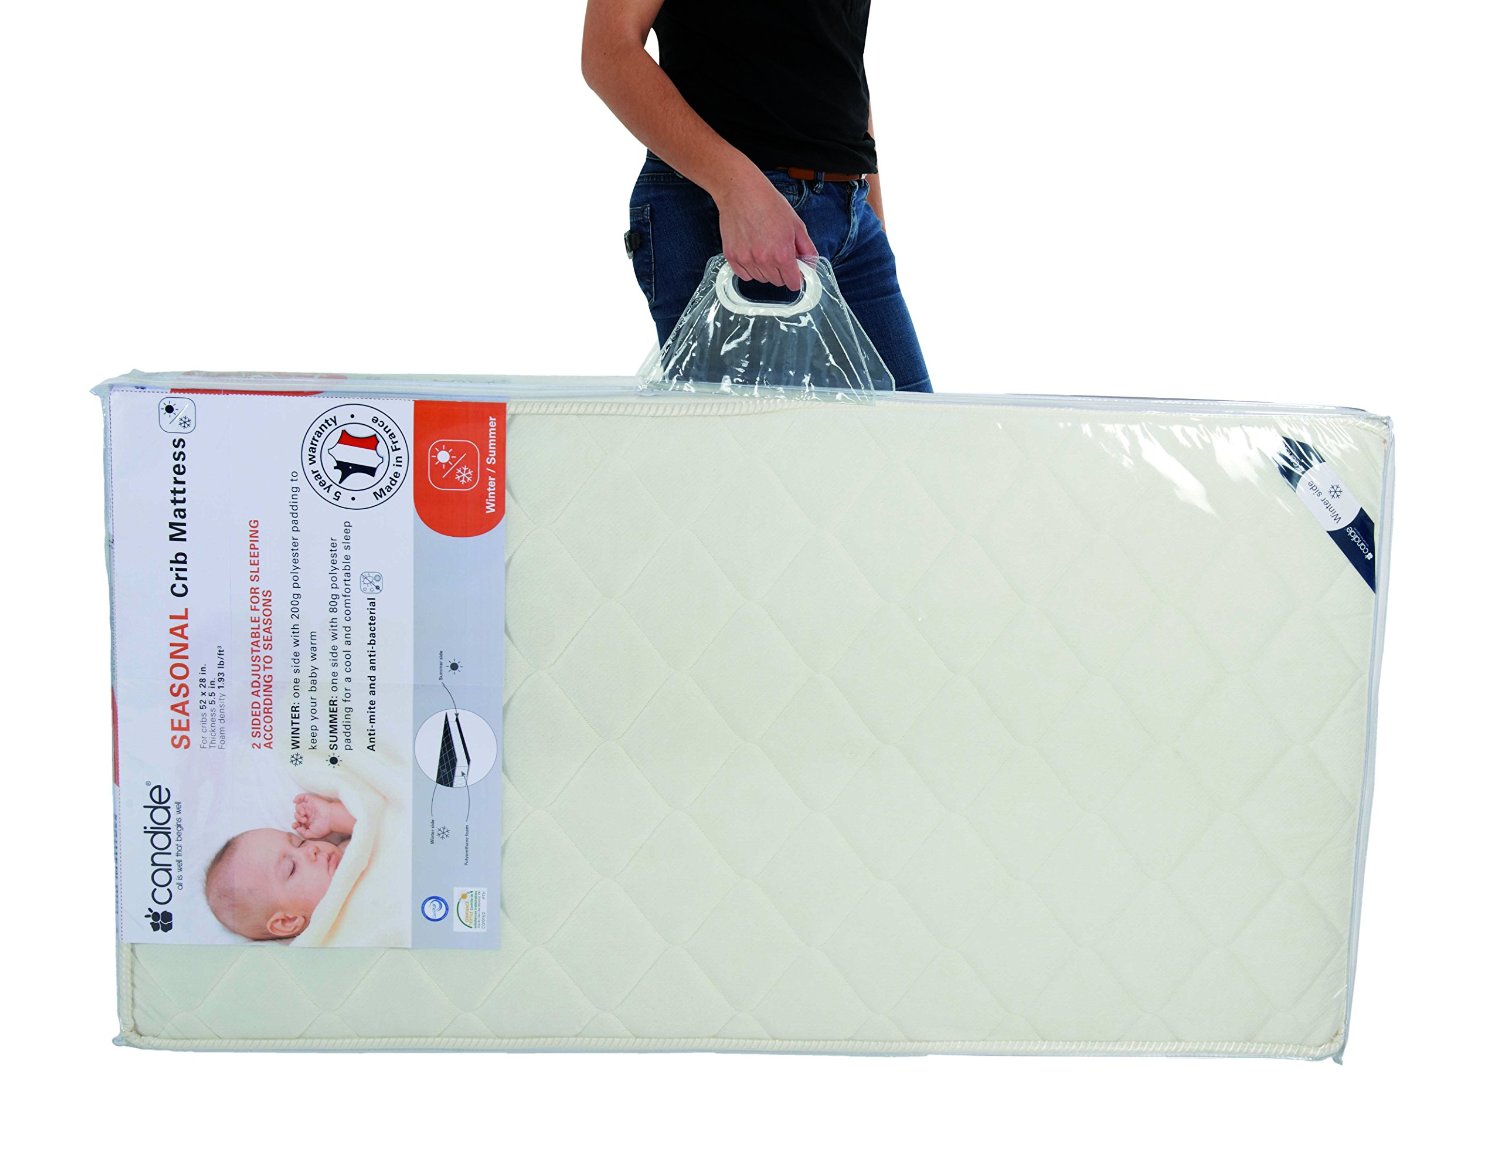 candide mattress